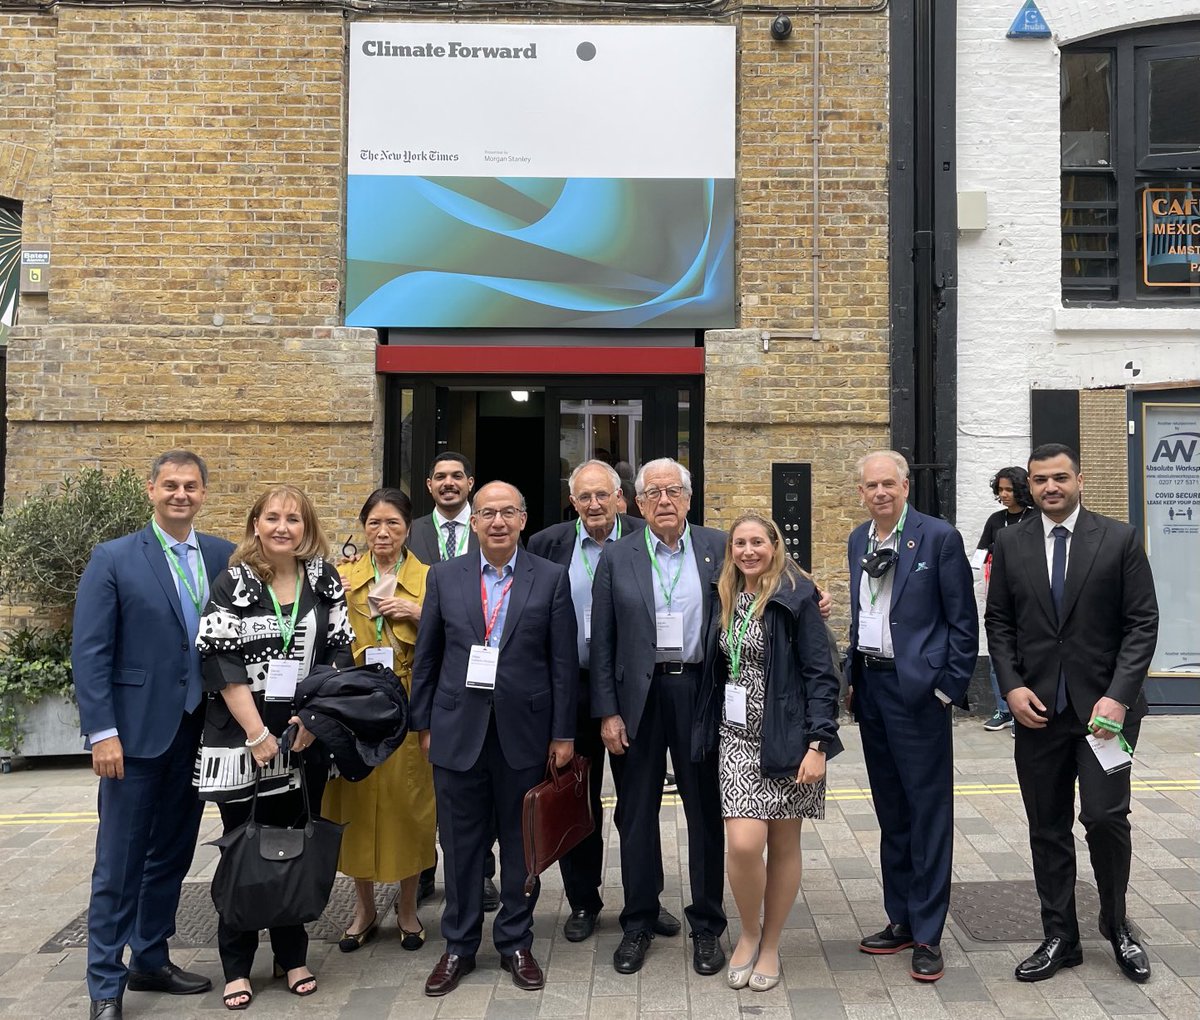 Estoy en Londres, con el equipo fundador del Centro Global para el Turismo Sustentable (STGC) en el evento #climateforward organizado por el ⁦@nytimes⁩, en el marco de la Climate Week de Londres.